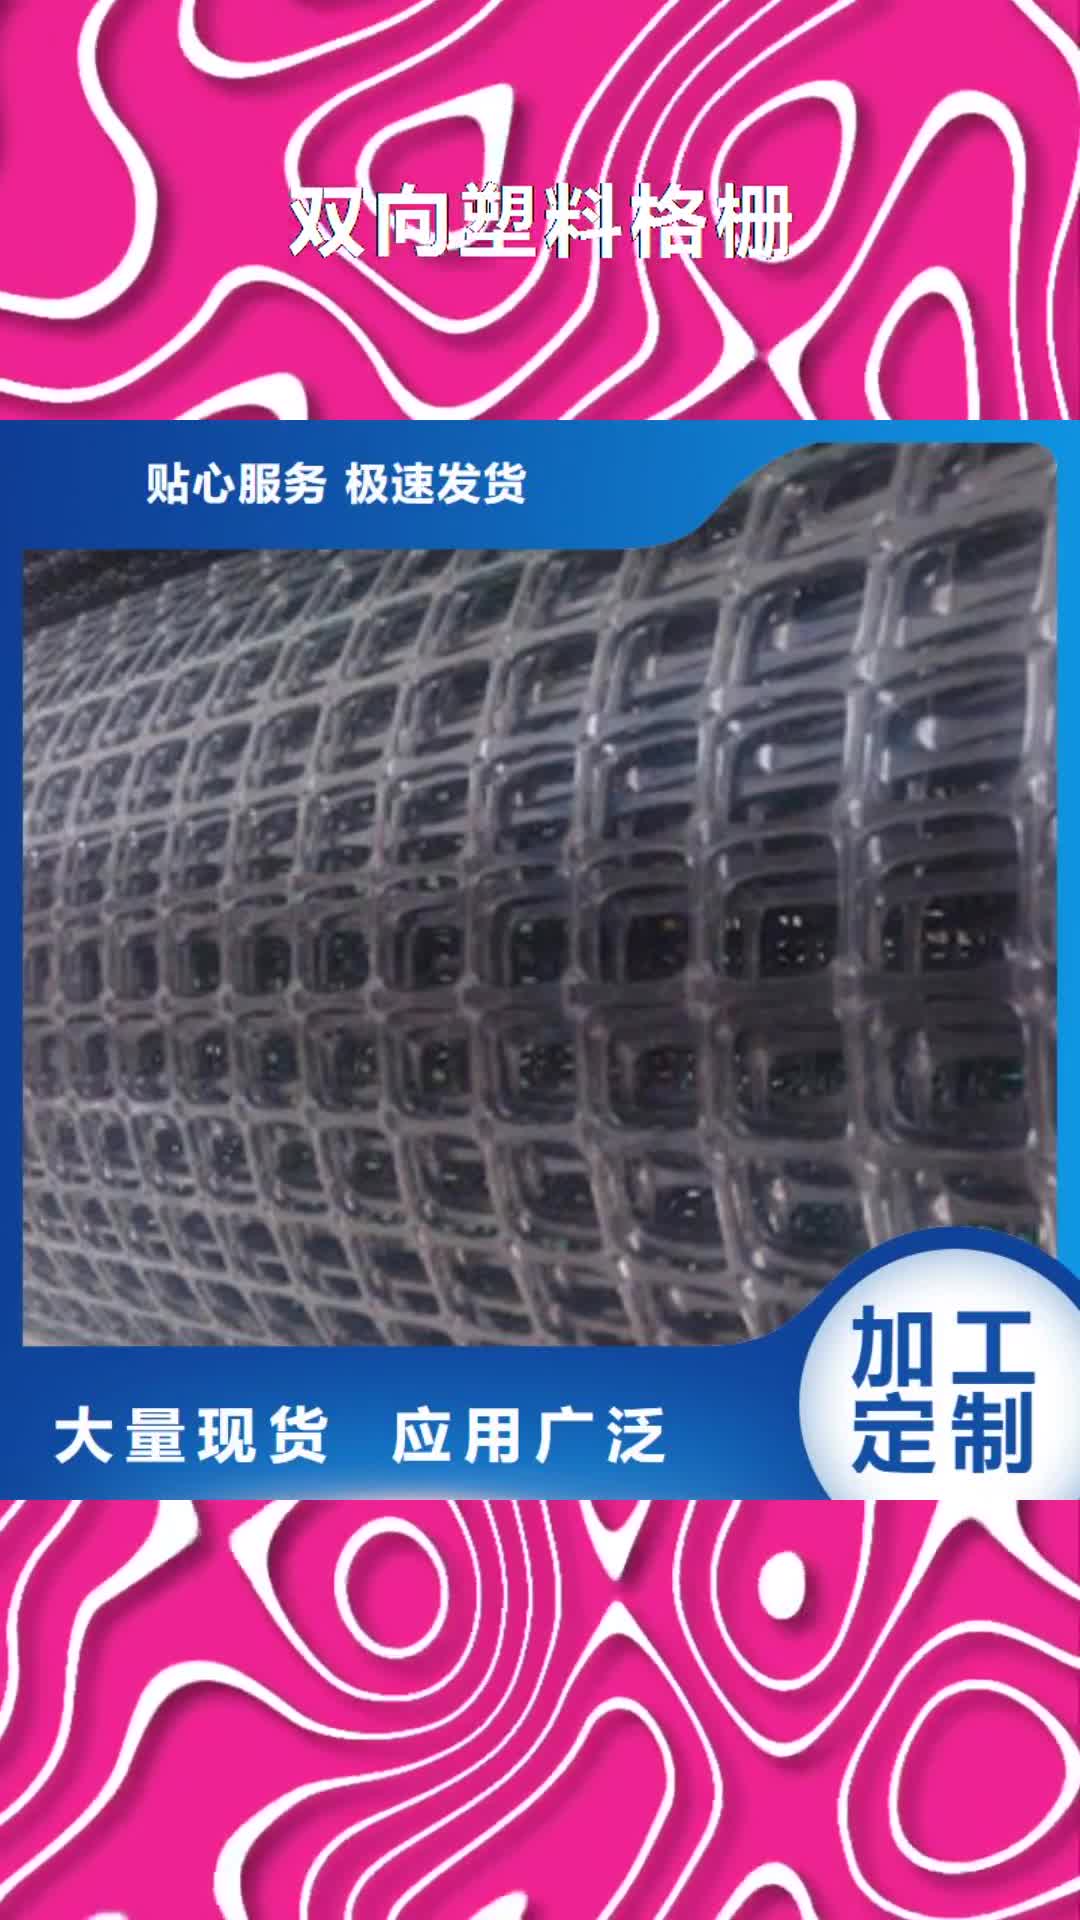 唐山【双向塑料格栅】_塑料排水板推荐商家